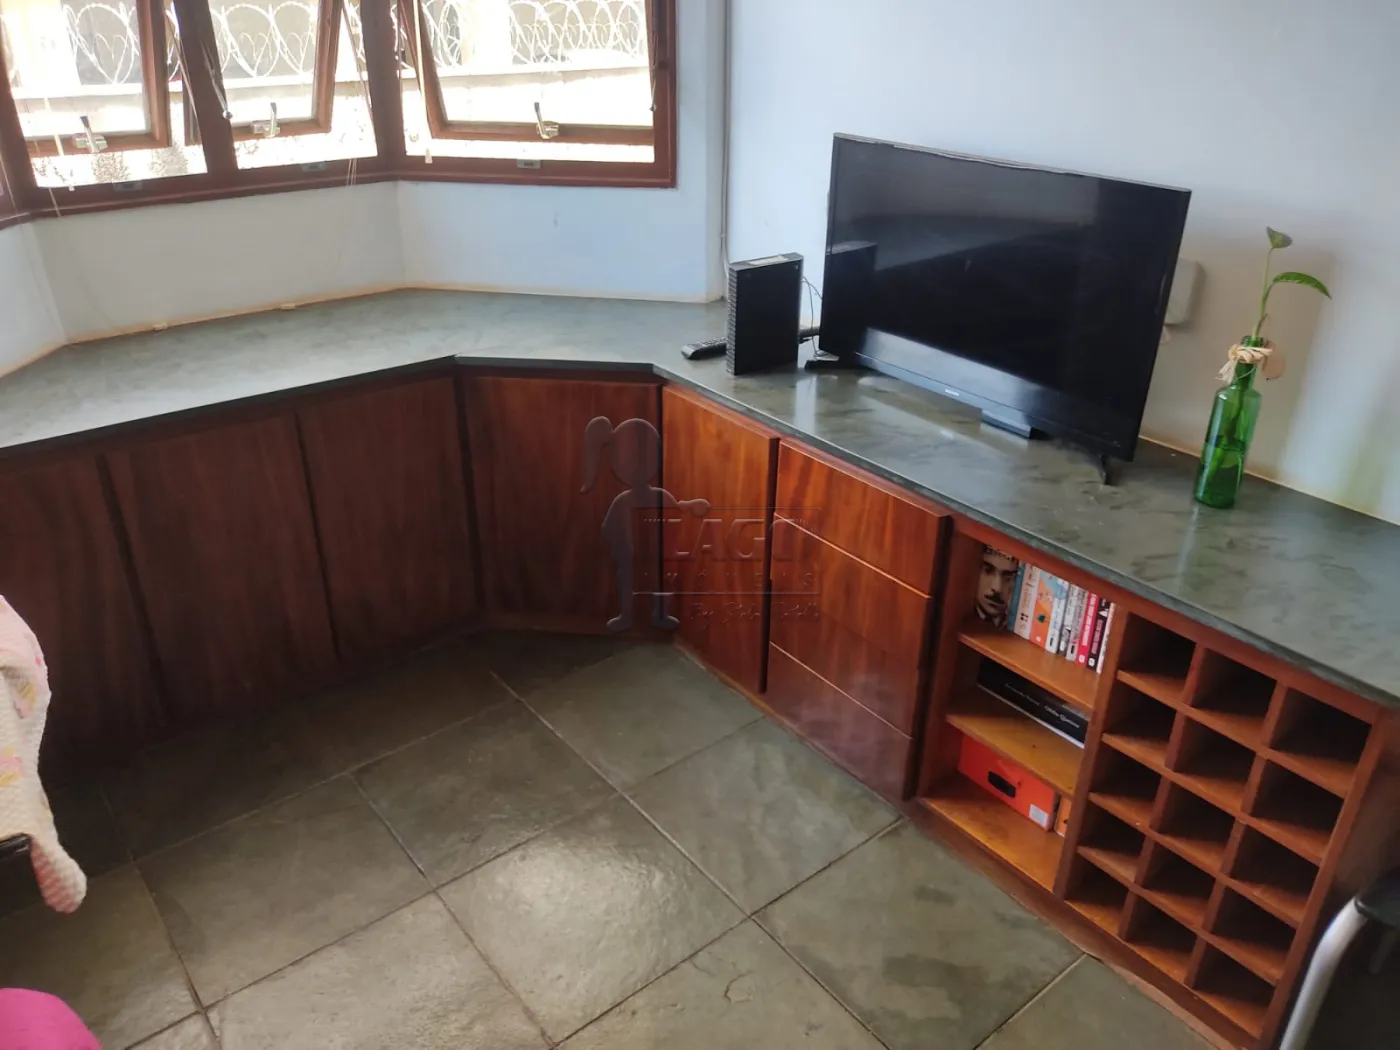 Alugar Apartamentos / Padrão em Ribeirão Preto R$ 600,00 - Foto 1